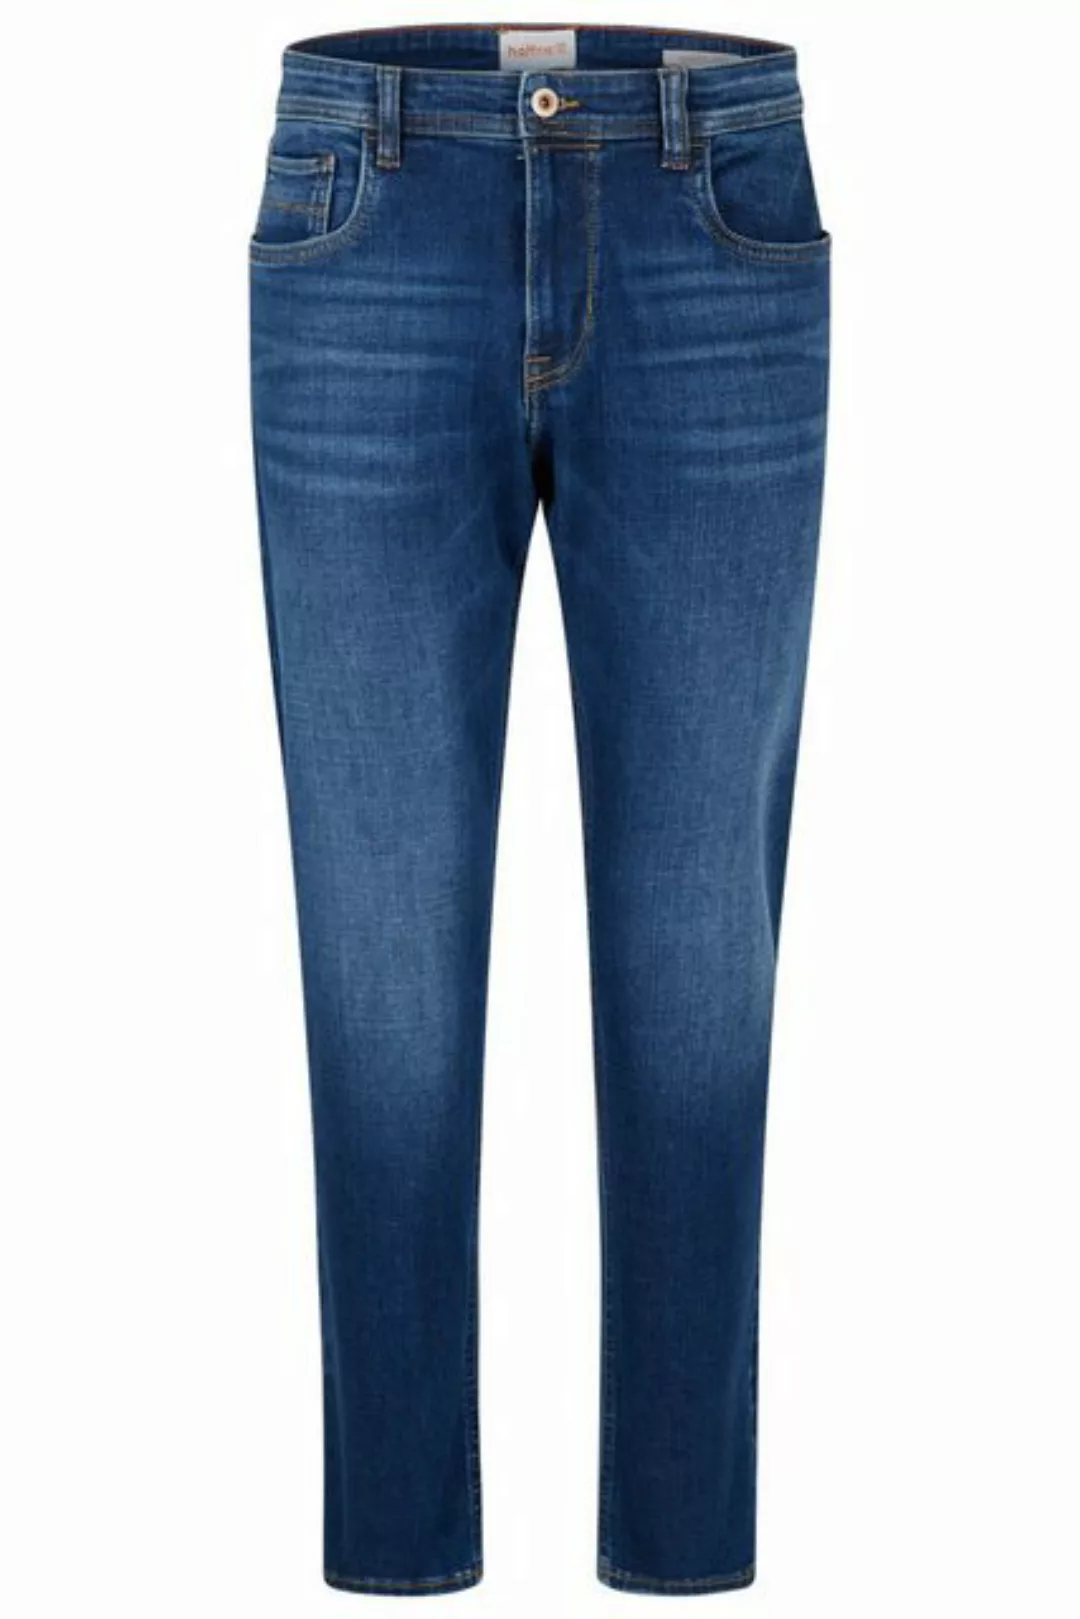 Hattric Slim-fit-Jeans günstig online kaufen